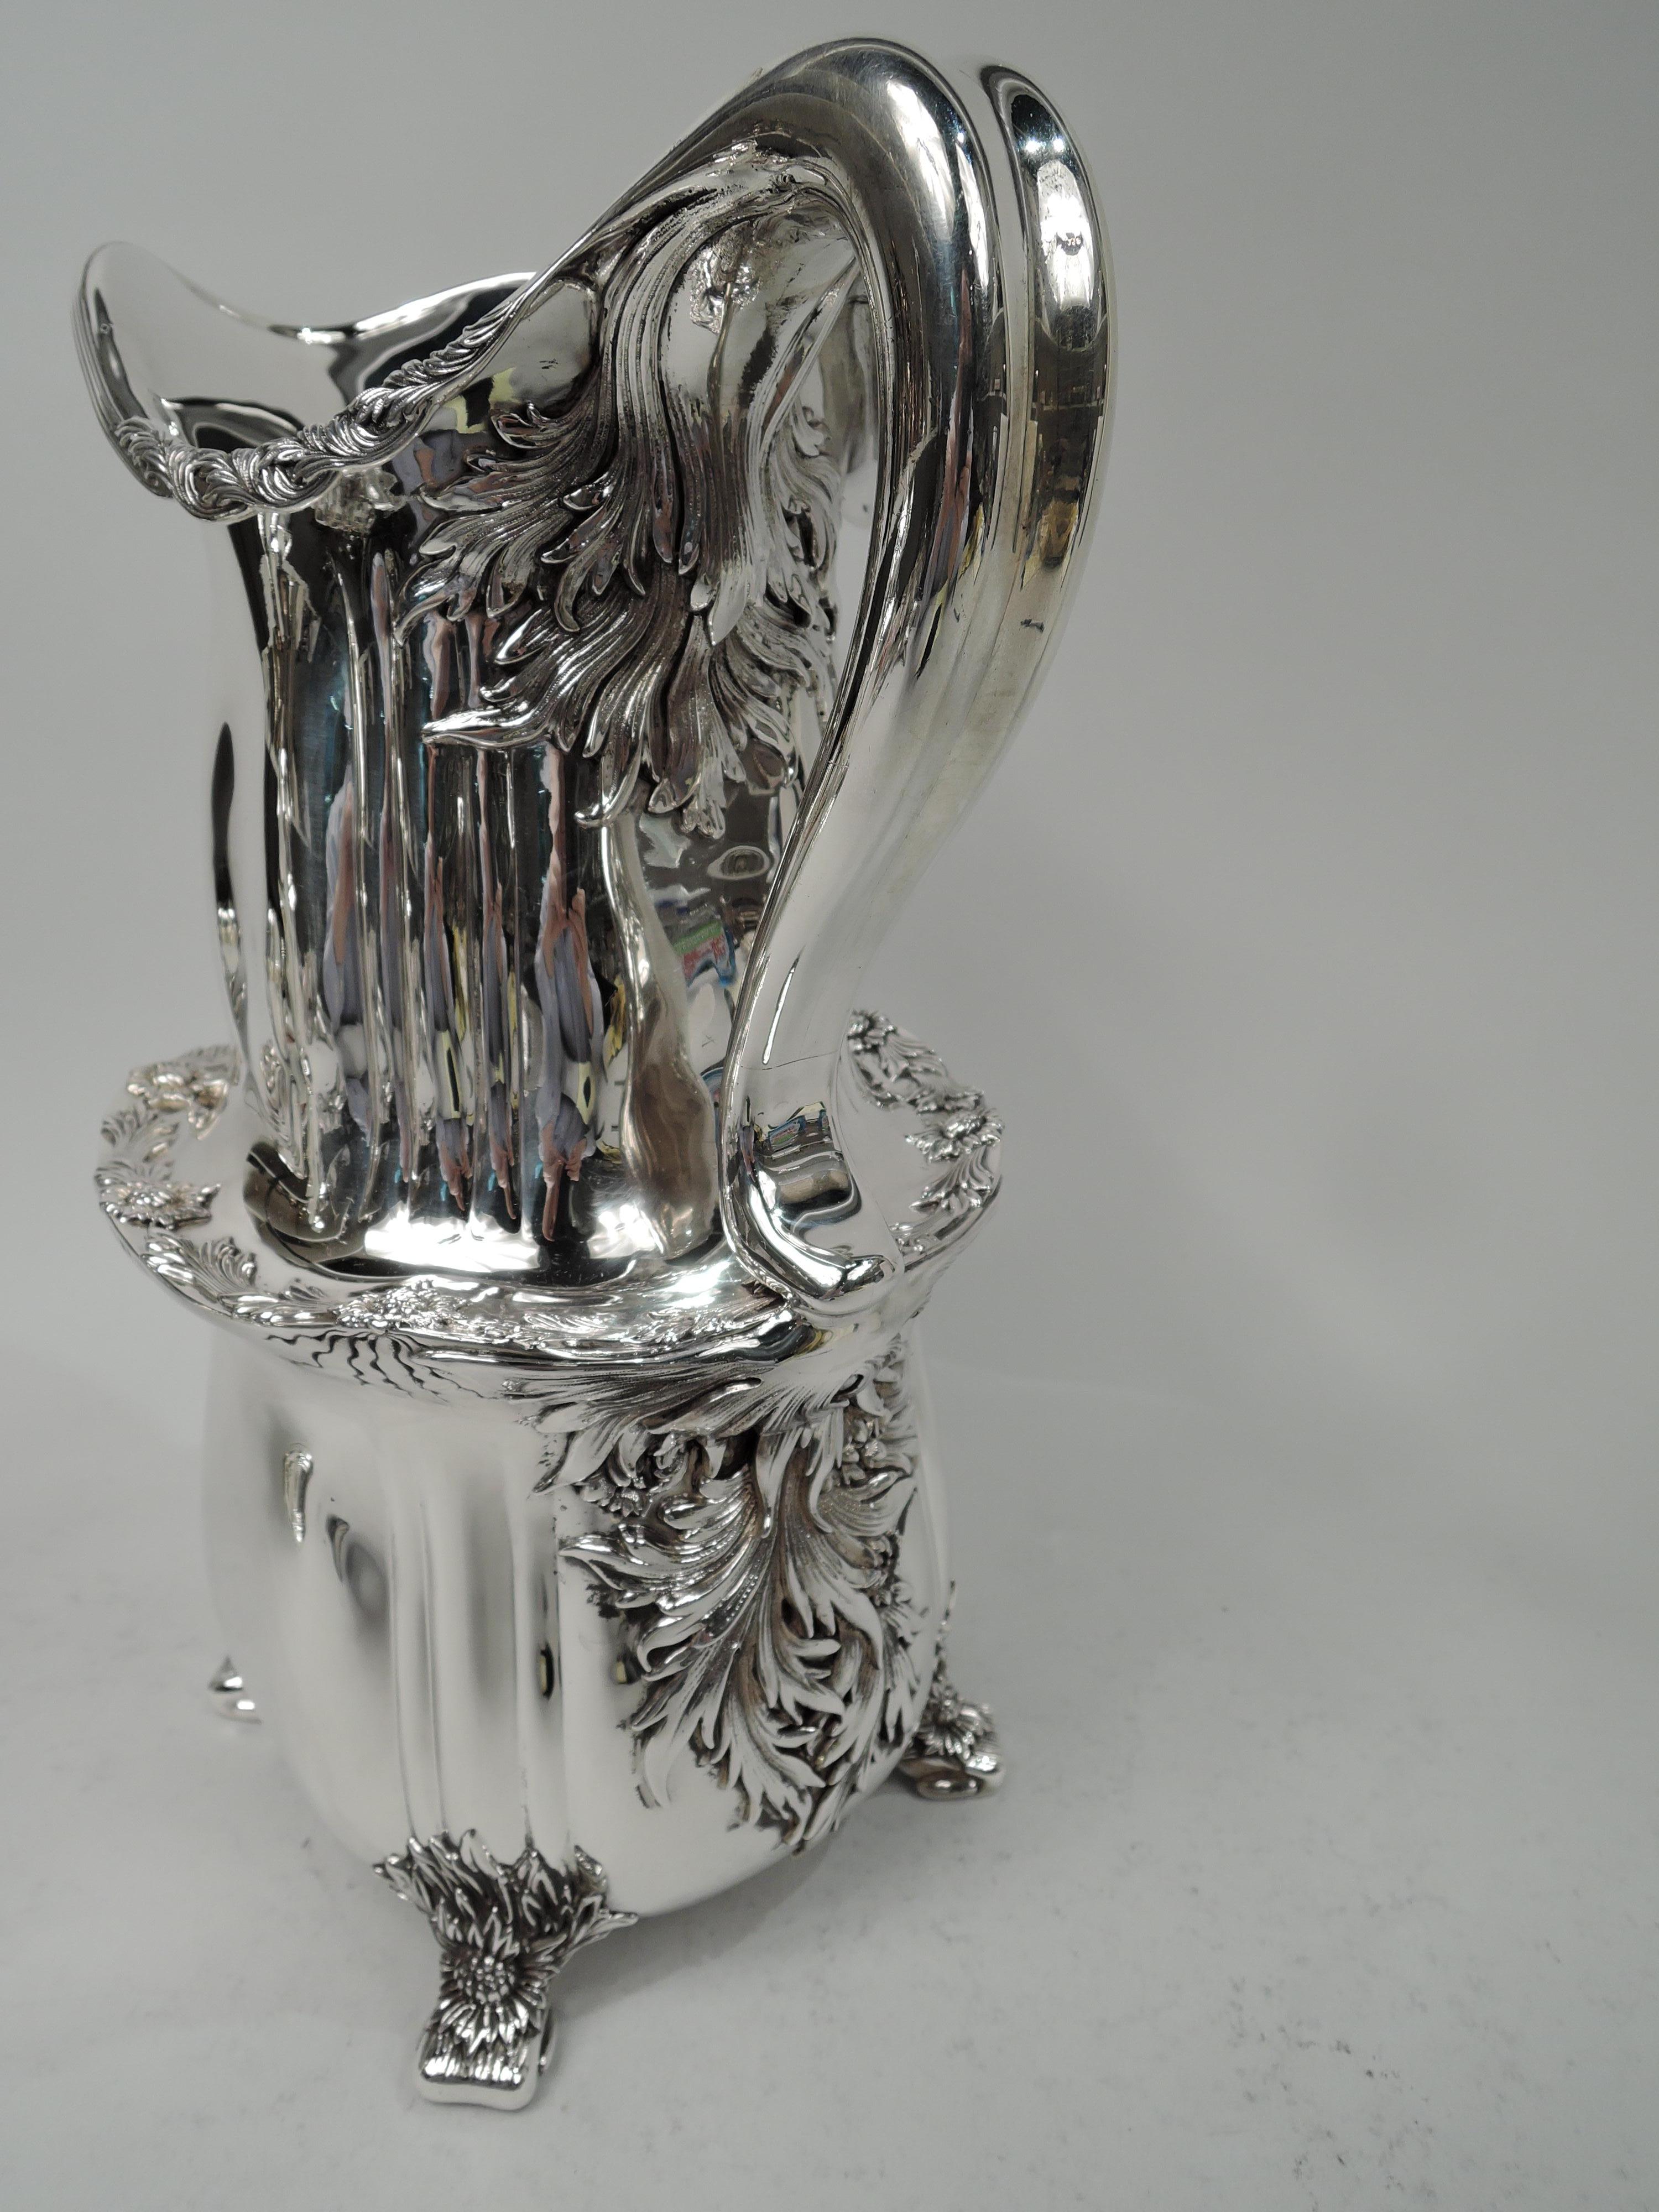 Seltene Chrysantheme Sterling Silber Wasserkrug. Hergestellt von Tiffany & Co. in New York. Doppelkürbis mit unregelmäßiger Riffelung; Helmmündung mit Blättern, die um den geriffelten Rand gewickelt sind. Die Schulter hat eine applizierte Blatt- und